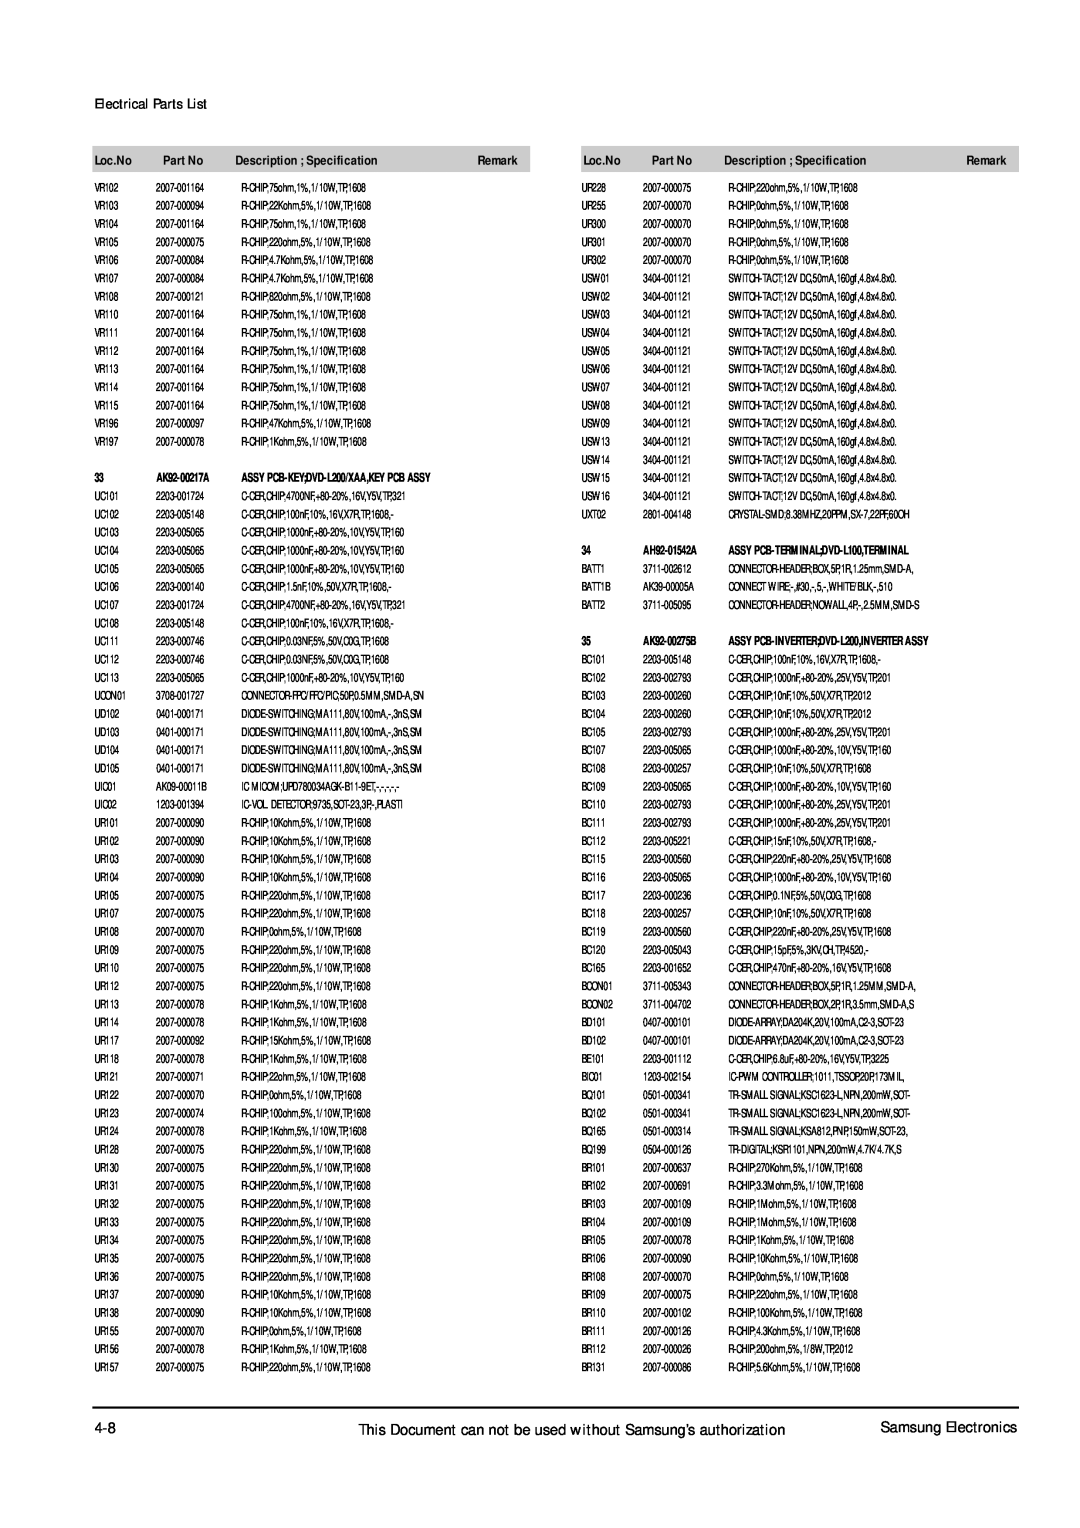 Samsung DVD-L200W service manual Electrical Parts List, Loc.No, Description Specification 